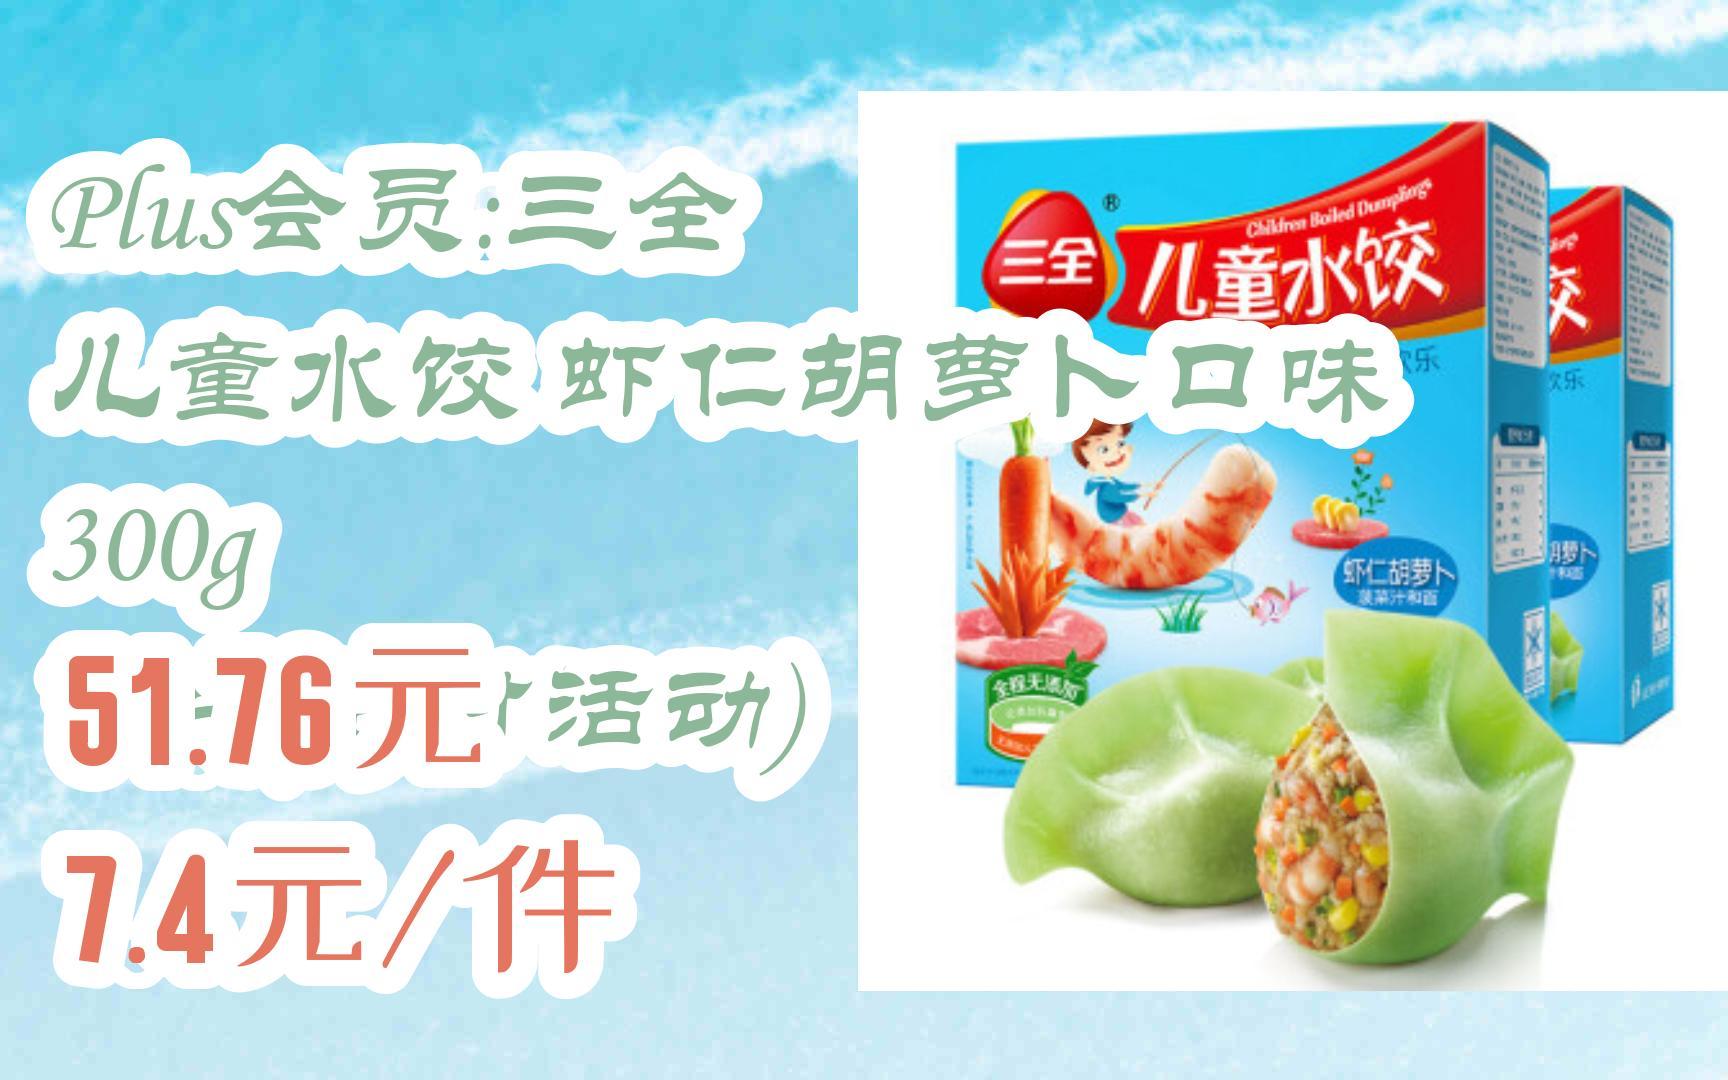 三全水饺广告图片